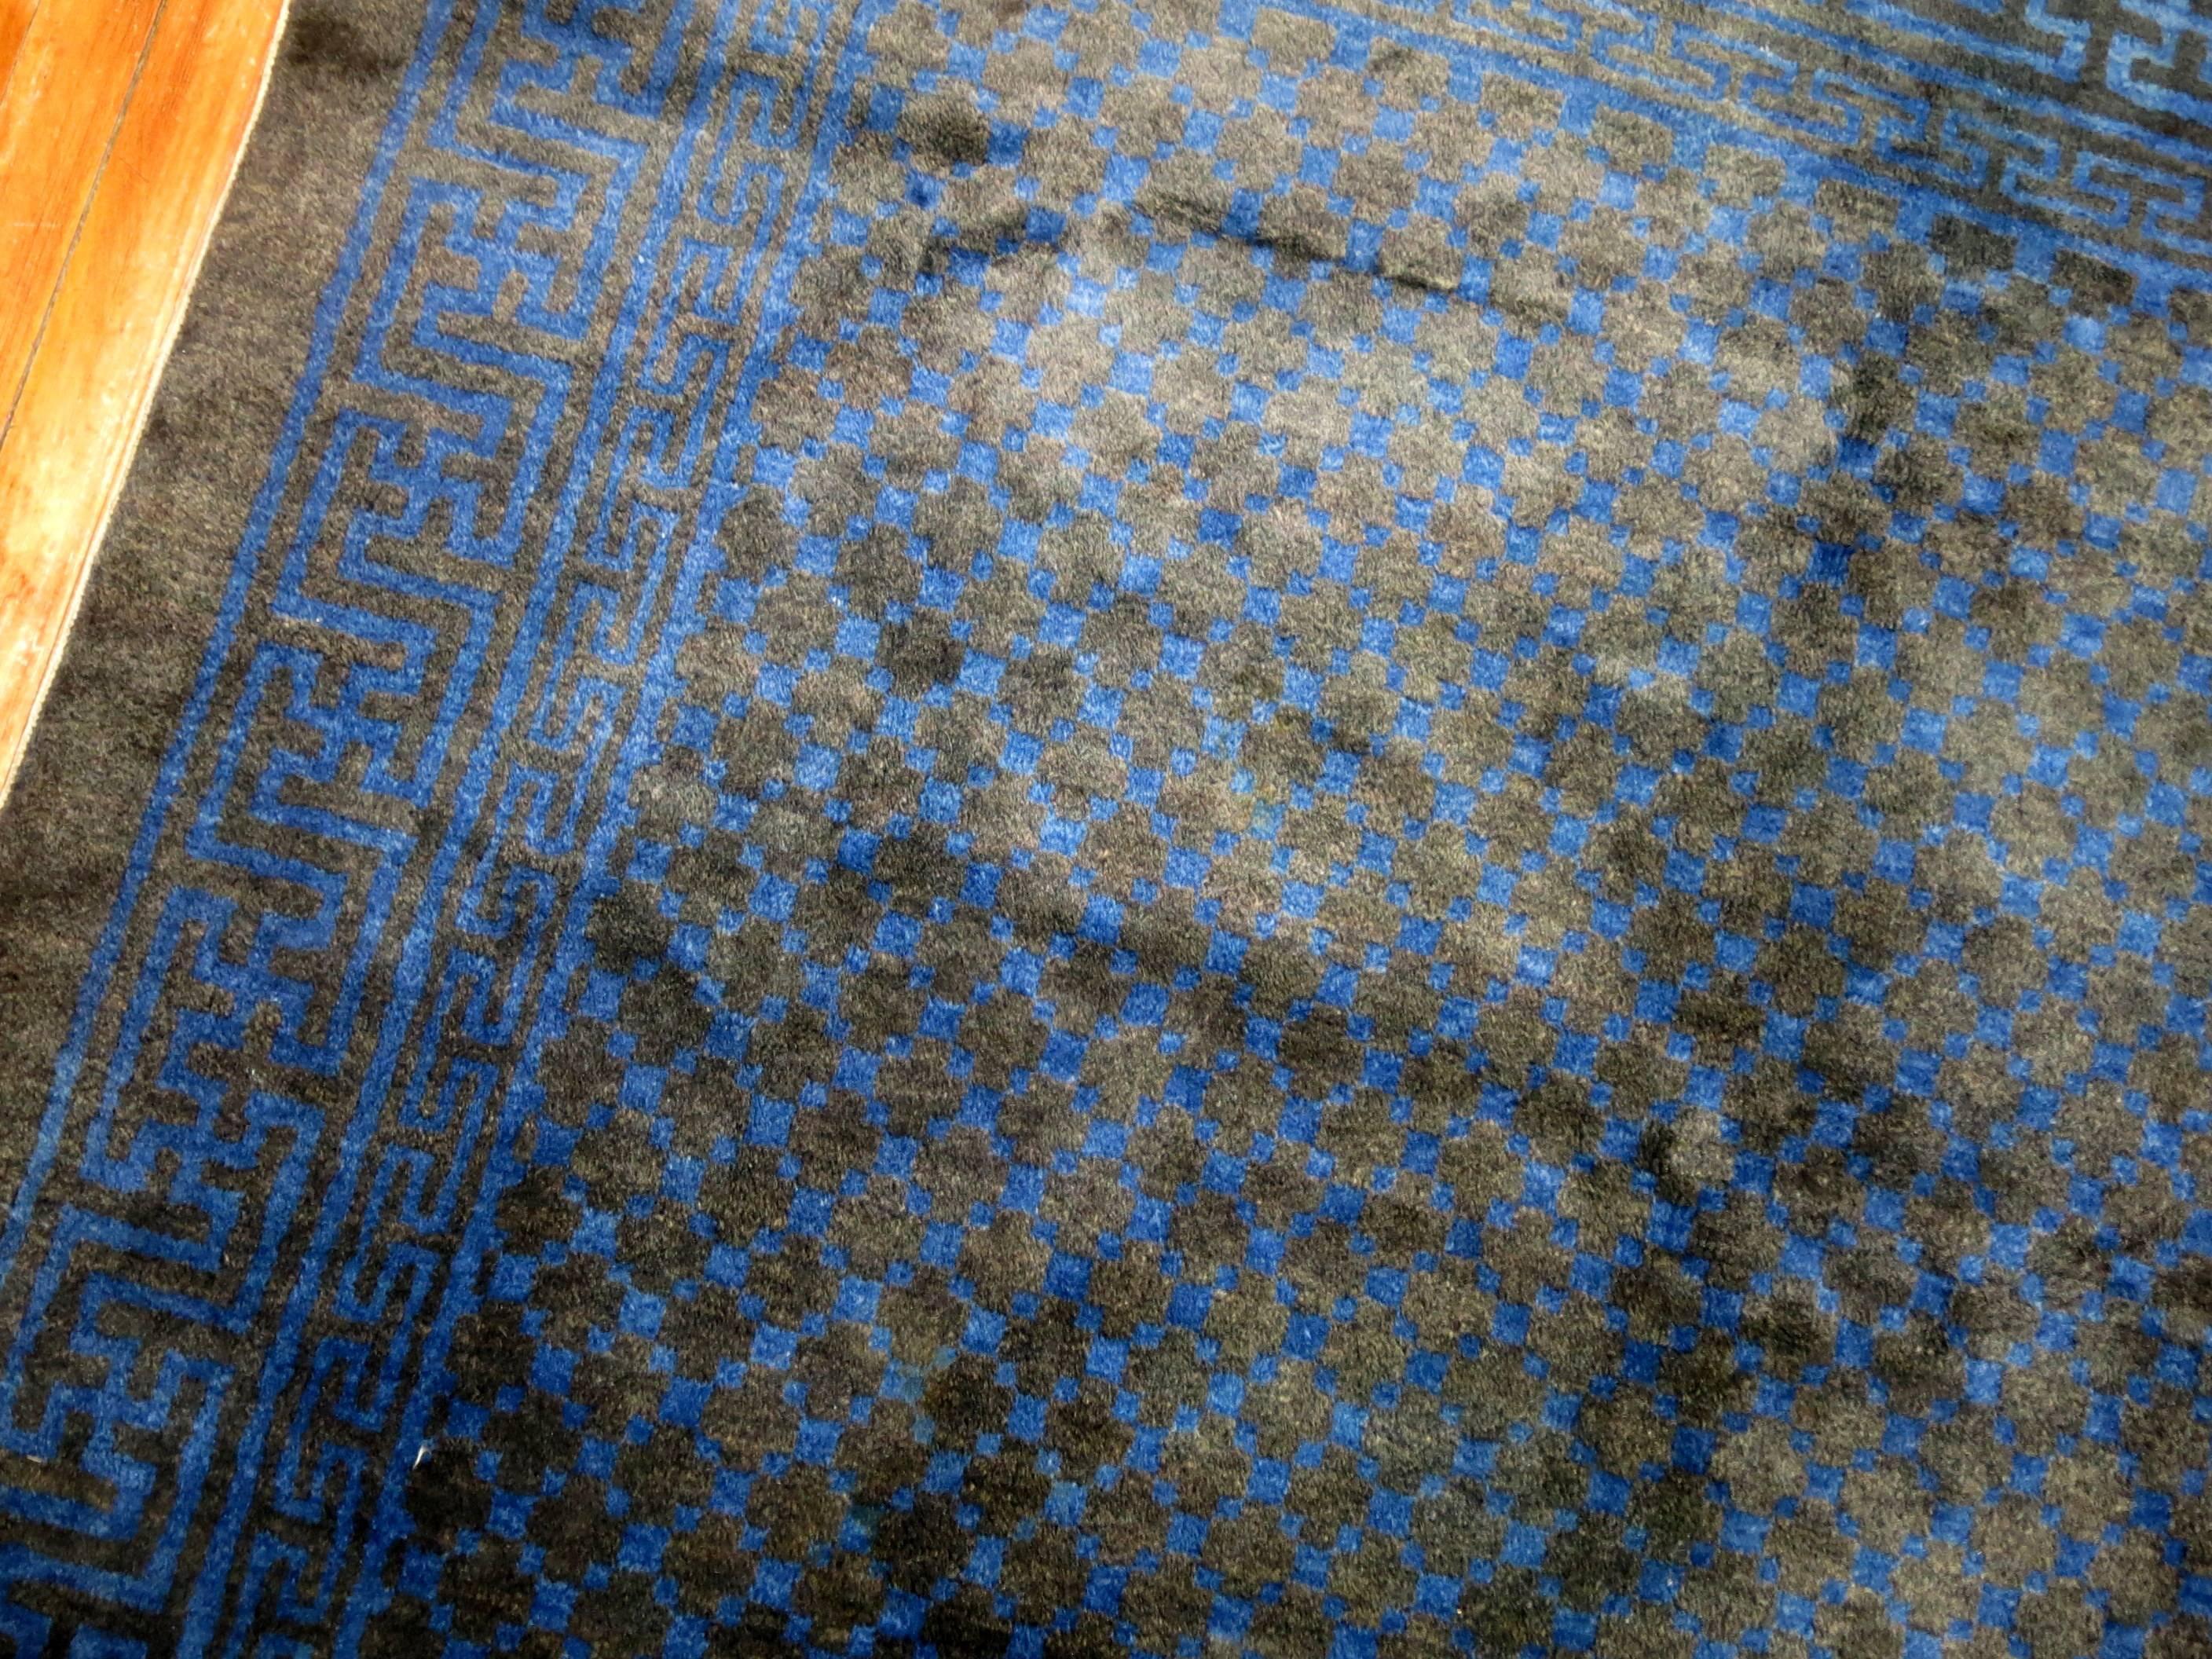 Ein quadratischer chinesischer Vintage-Teppich in vorherrschenden Schattierungen von Mitternachtsblau. Die Wolle ist sehr weich und alle Farben sind natürlich.

5'4'' x 5'11''